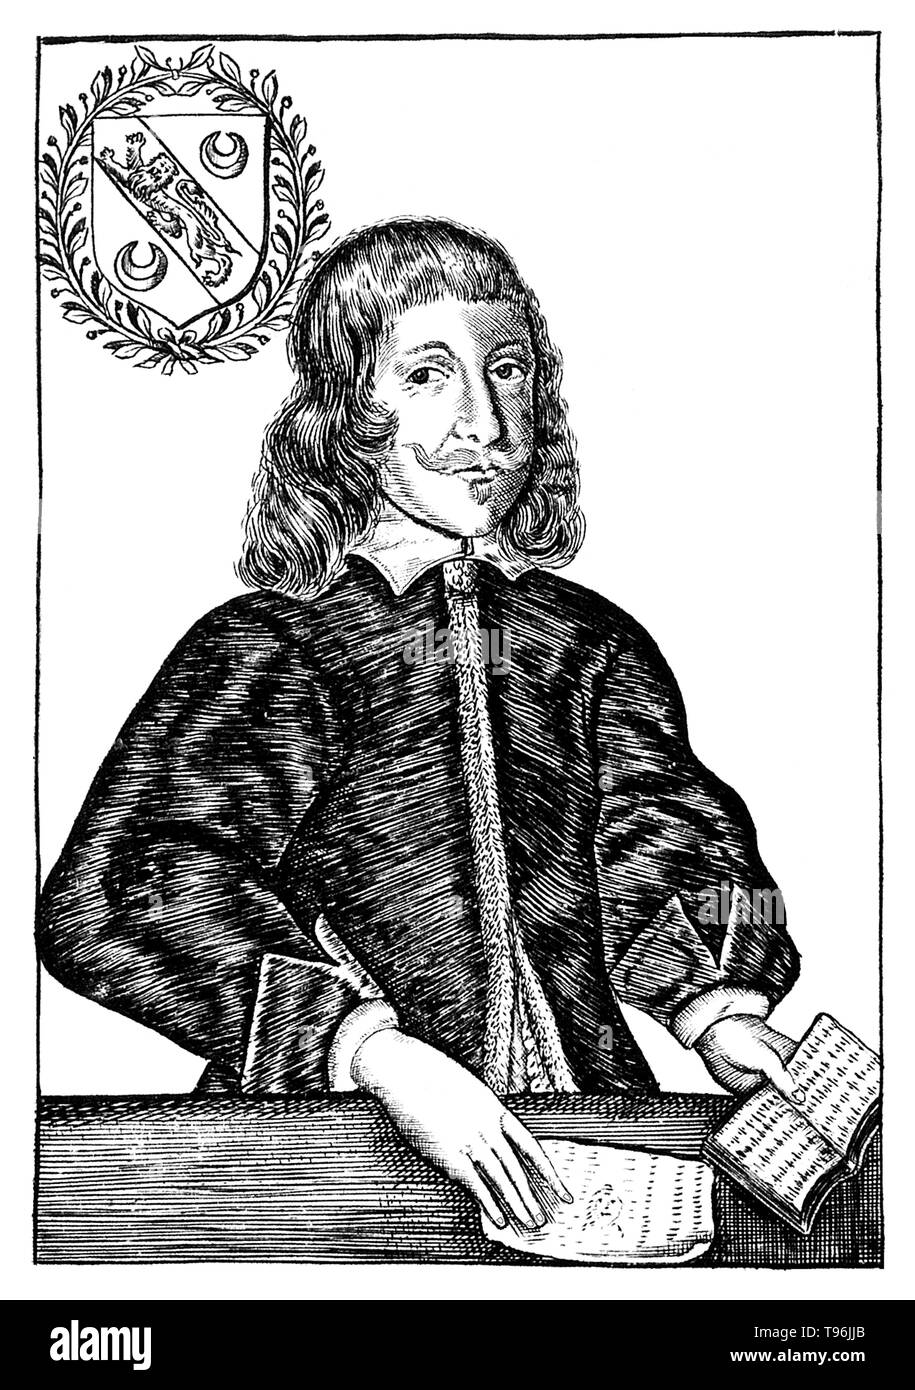 Nicholas Culpeper (18 Ottobre 1616 - 10 gennaio 1654) era un botanico inglese, erboristeria, medico e astrologo. I suoi libri pubblicati include l'inglese Physitian (1652), a base di erbe completa (1653), che contiene un ricco archivio di prodotti farmaceutici a base di erbe e di conoscenza, e sentenza astrologica di malattie da Decumbiture dei malati (1655), che è una delle più dettagliate documenti noti sulla pratica di astrologia medica. Foto Stock